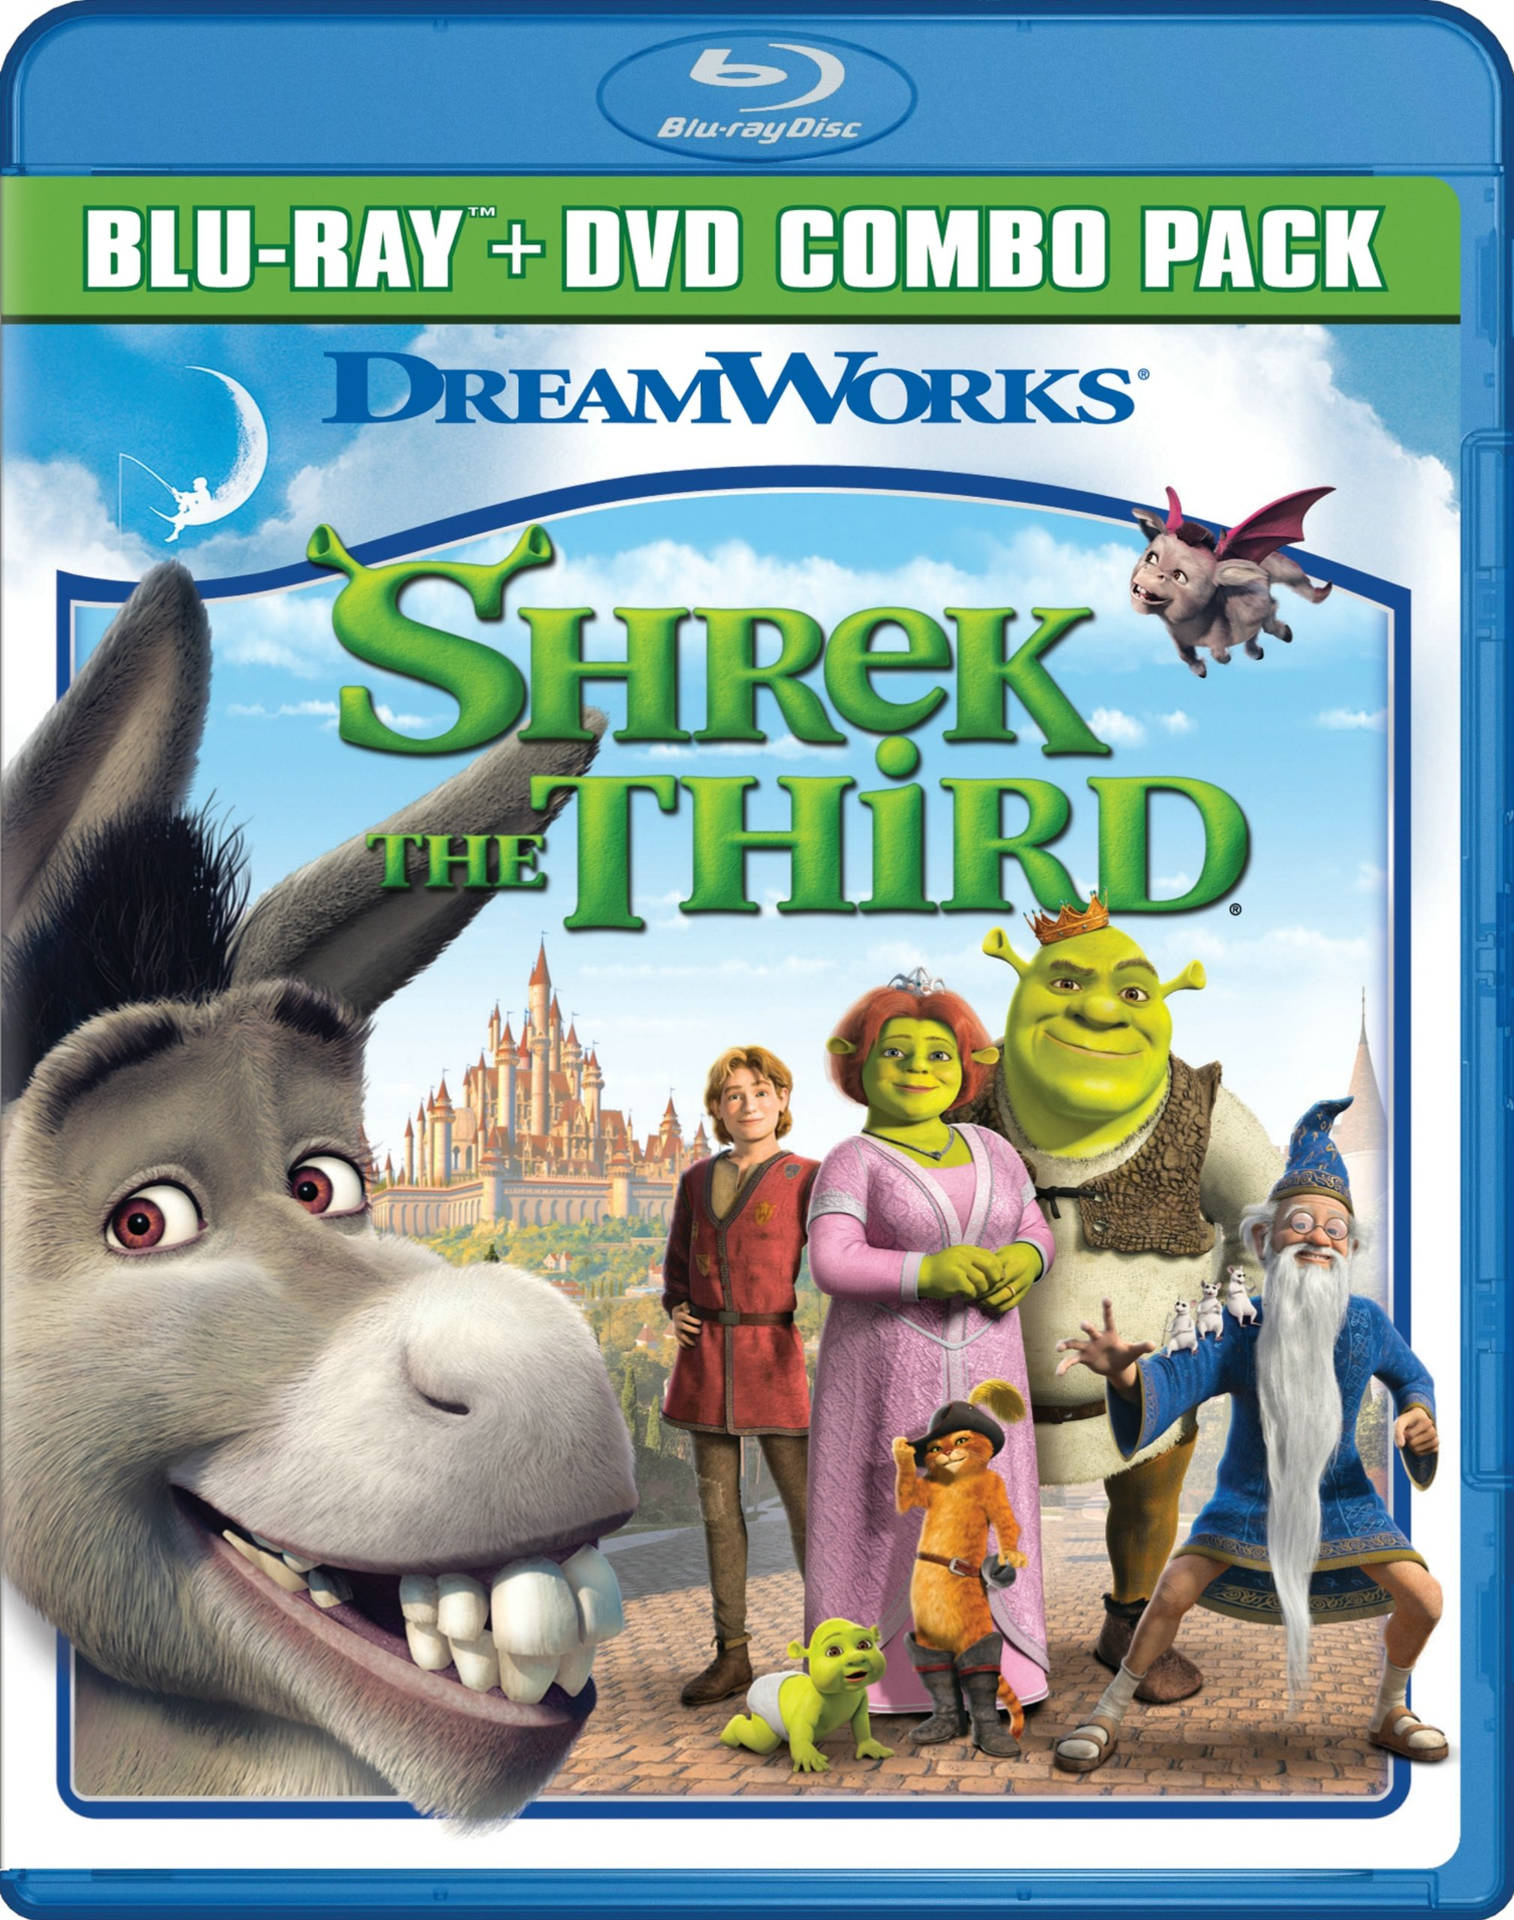 Shrek the Third DVD Cover Art Wallpaper